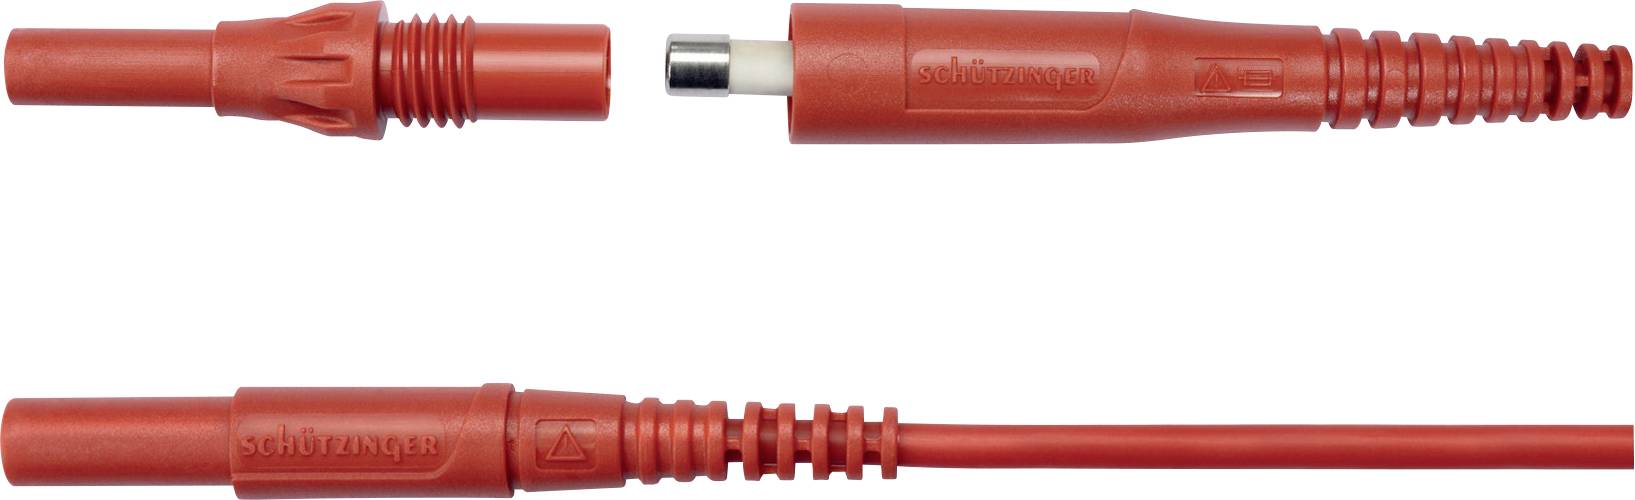 SCHÜTZINGER SET 7685 / MSFK B441 / 0.5A Messleitungs-Set [Stecker 4 mm - Stecker 4 mm] 5 St.